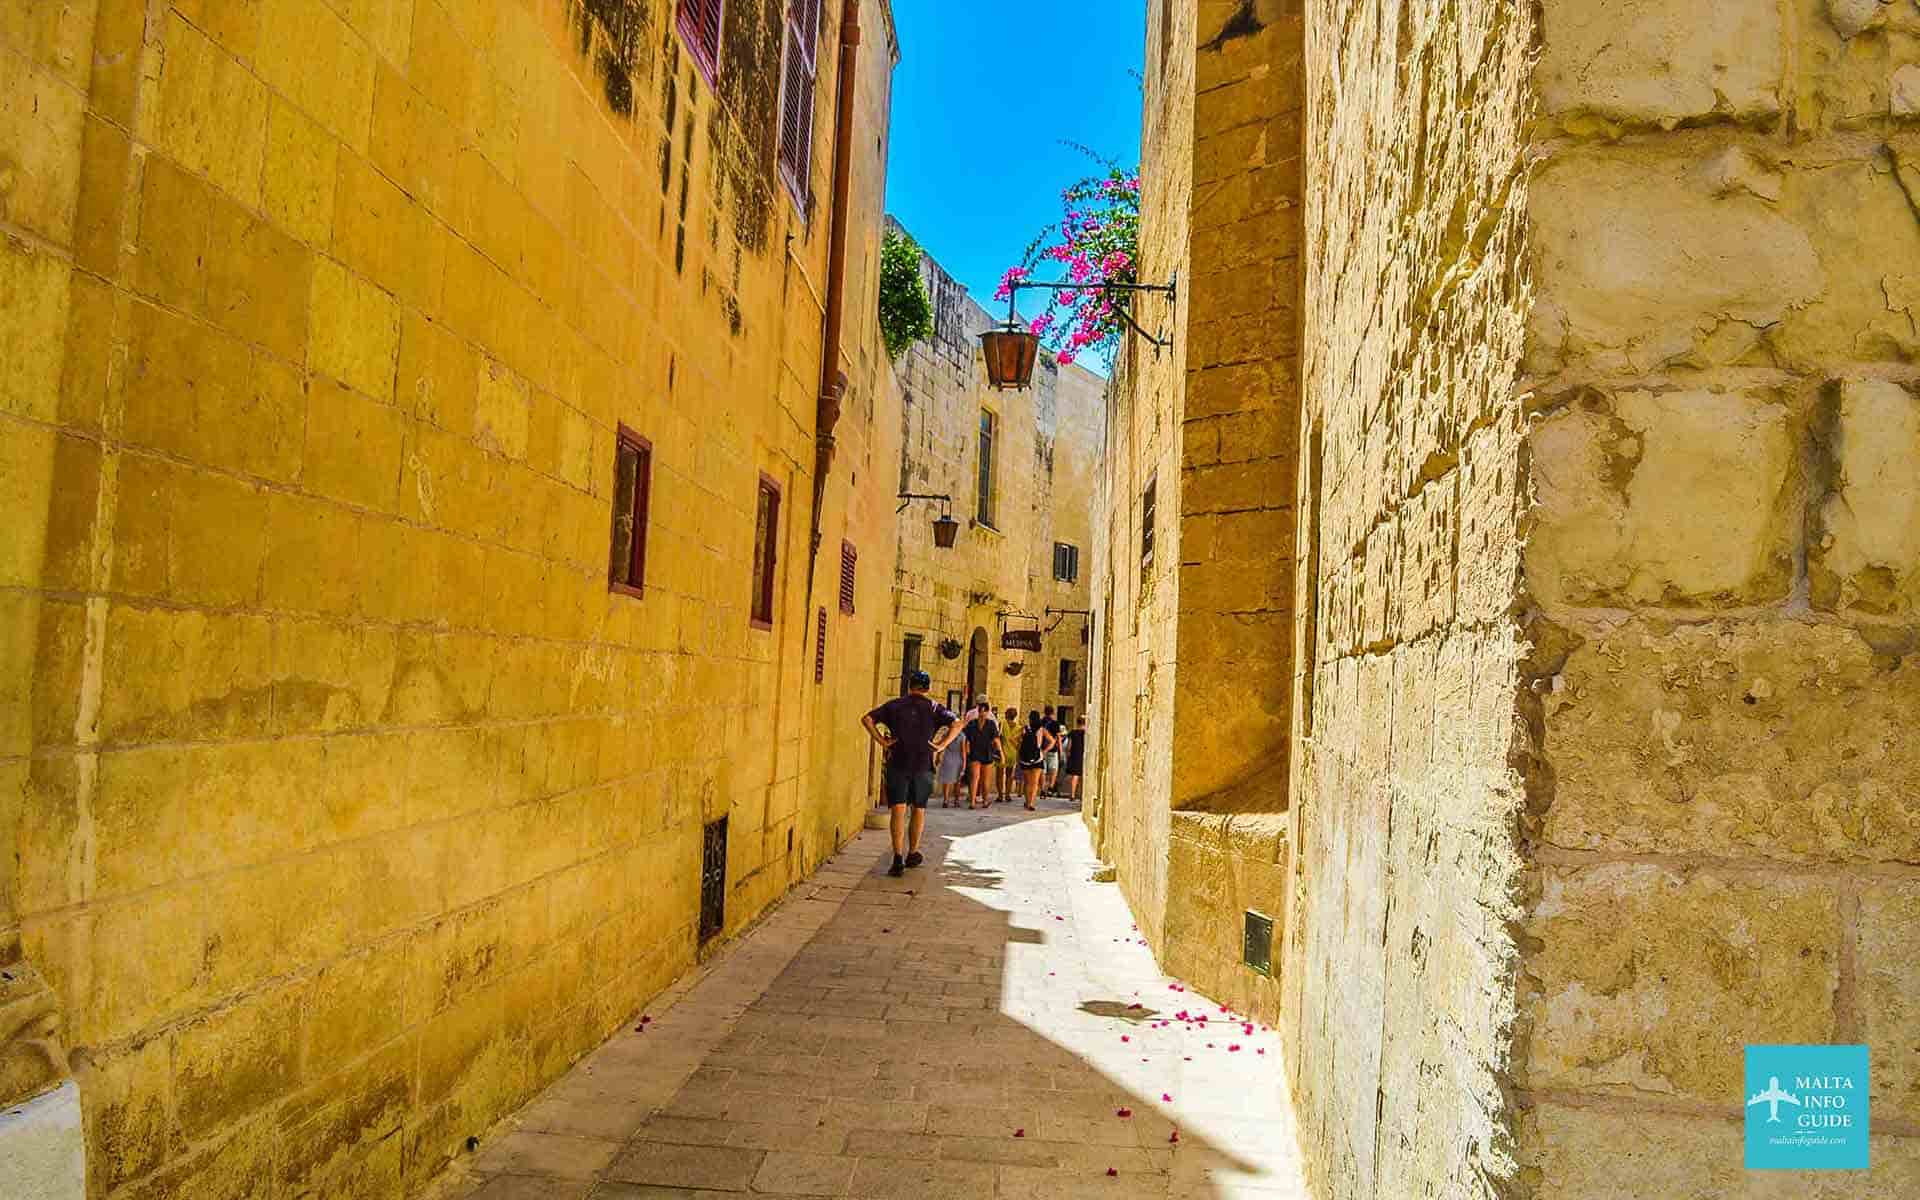 The narrow streets of Mdina